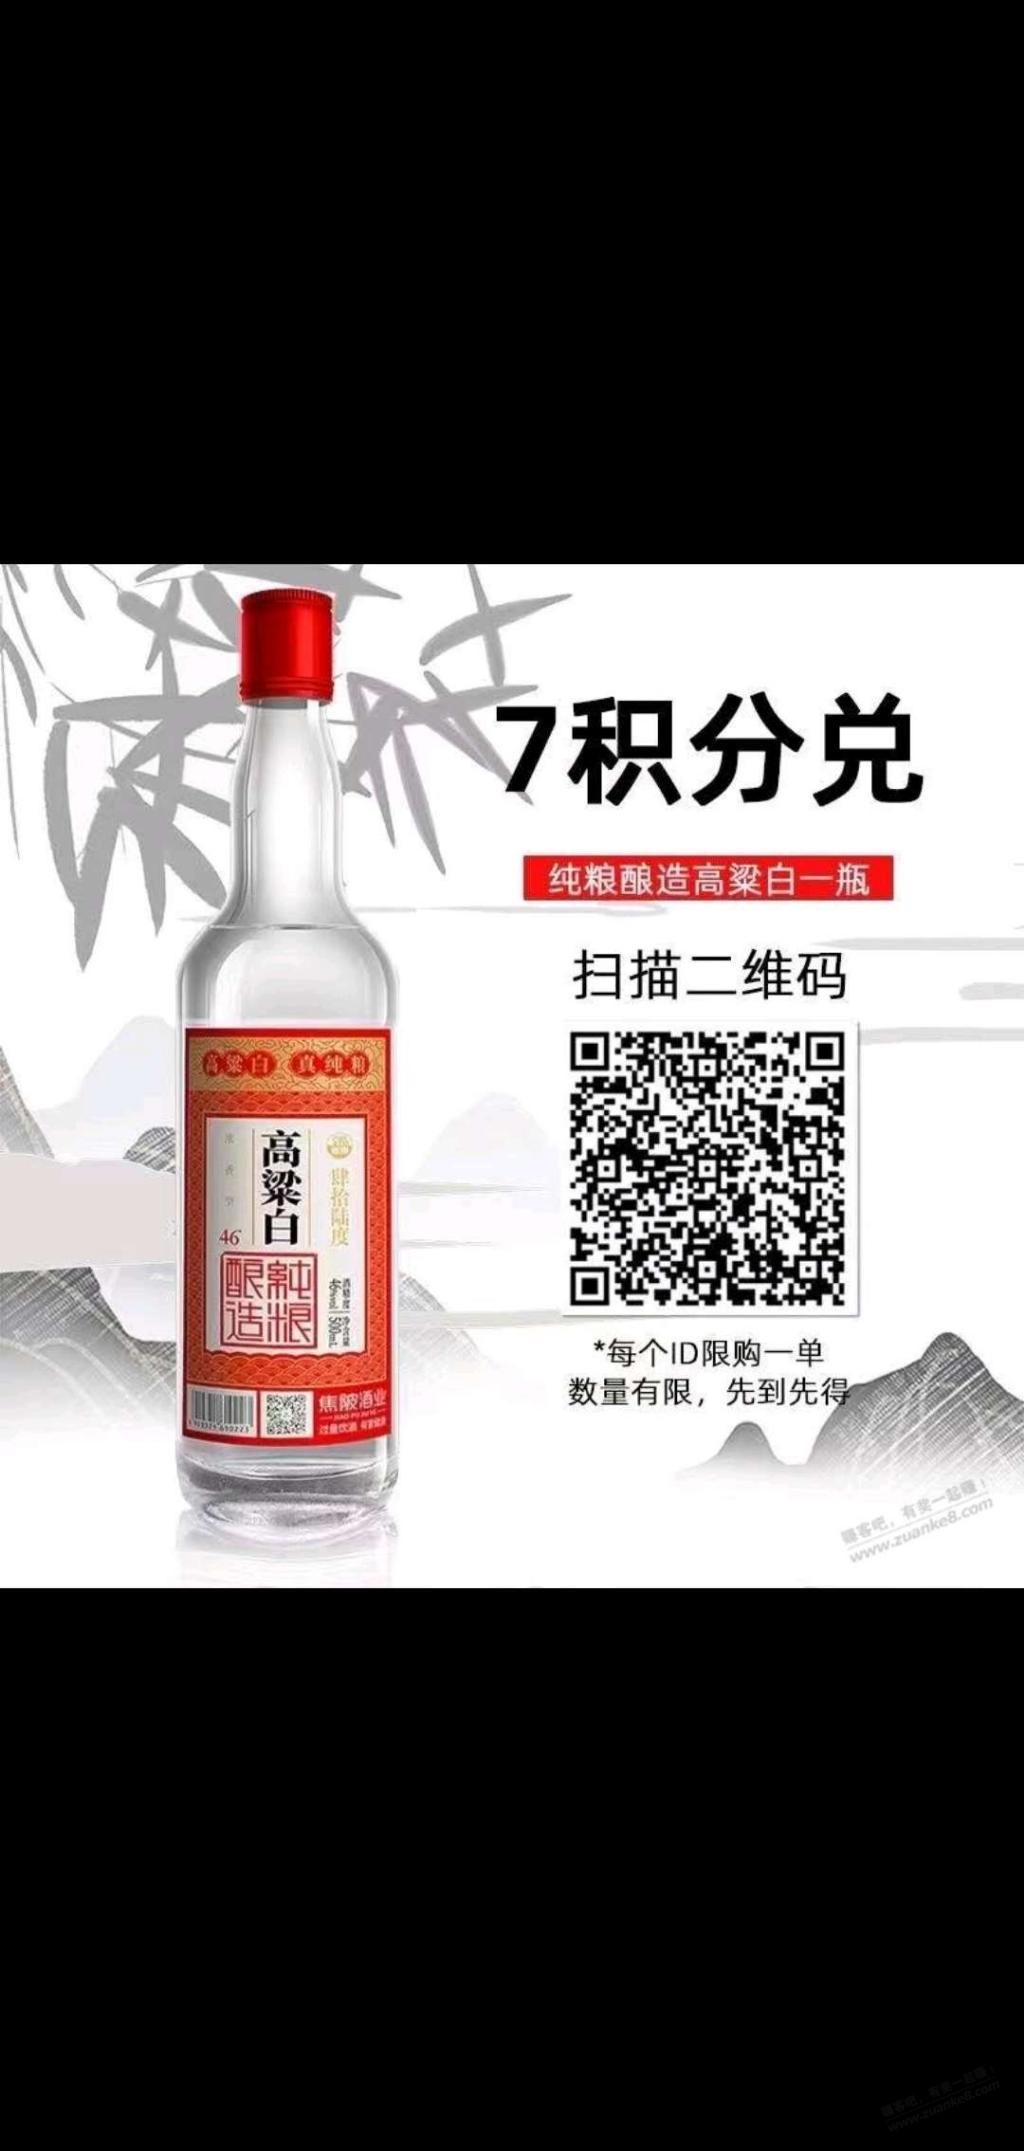 免费白酒-惠小助(52huixz.com)